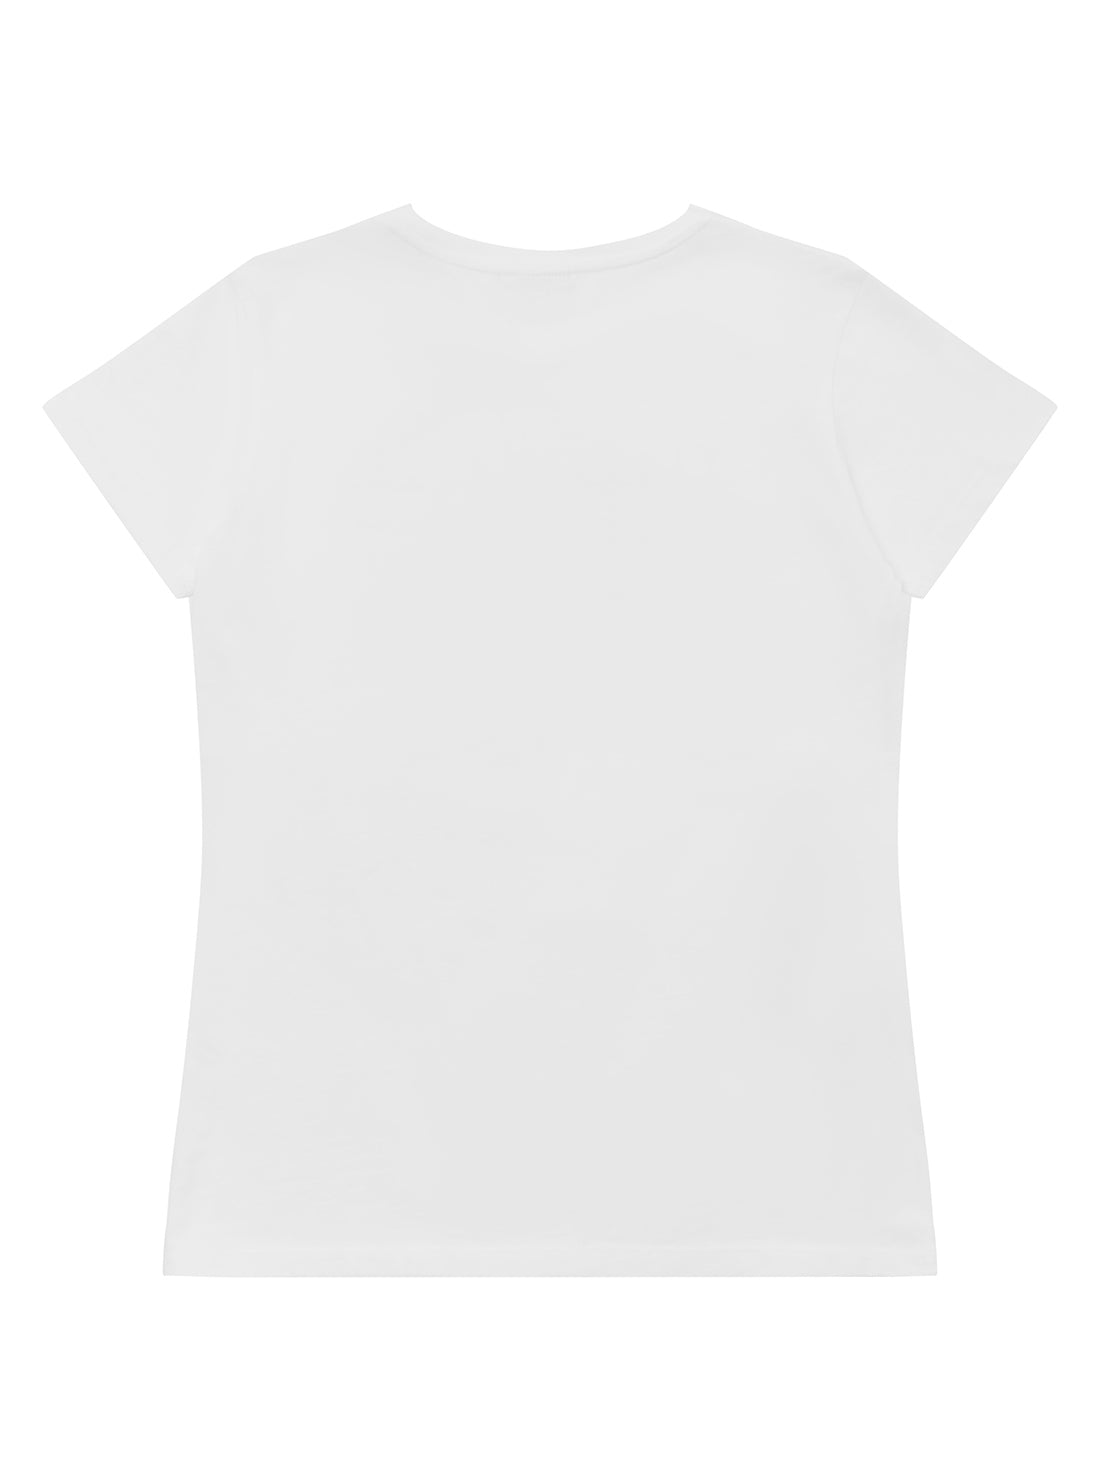 GUESS Boy White Grid Logo T-Shirt (4-14) L2YI53K9Y40 Back View